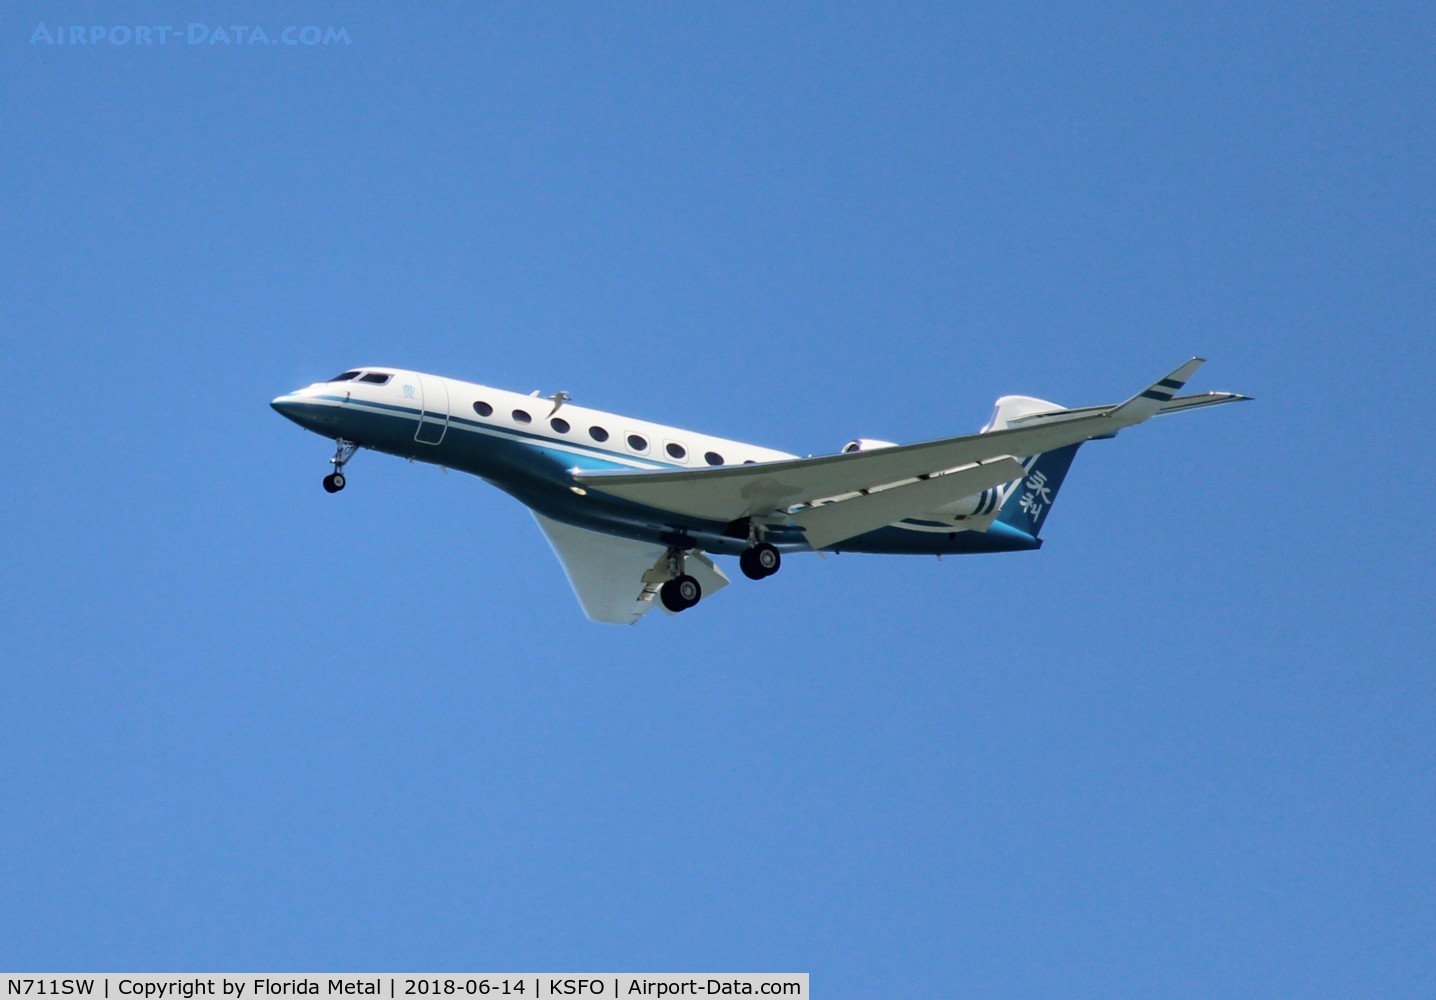 N711SW, 2011 Gulfstream Aerospace G650 (G-VI) C/N 6007, SFO spotting 2018